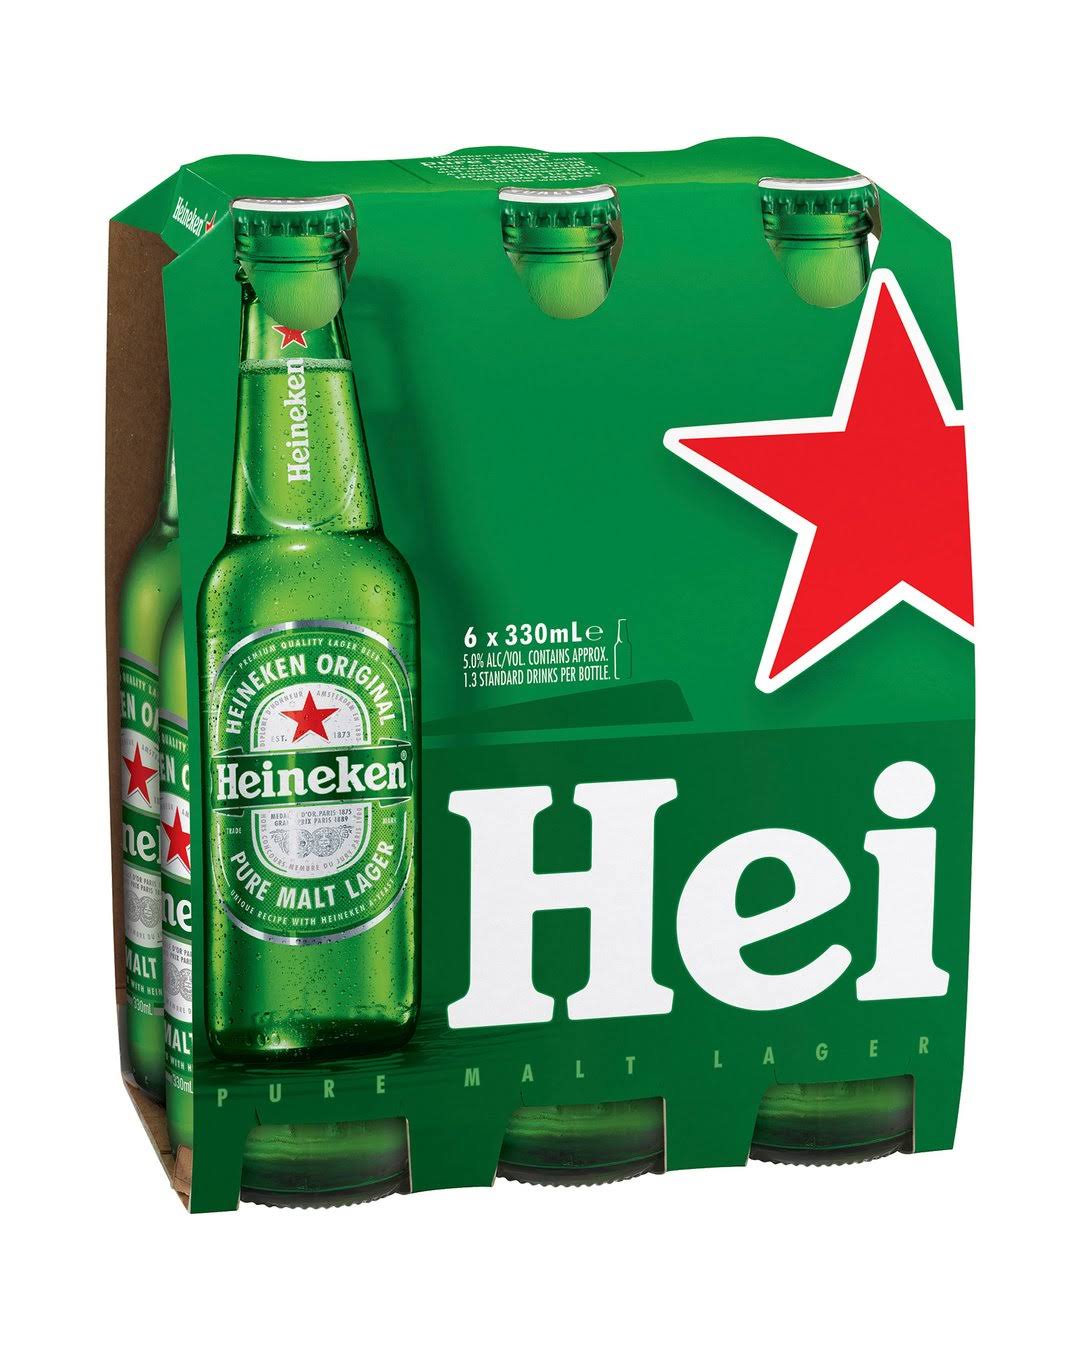 Heineken Lager Beer - 330ml, 6pk